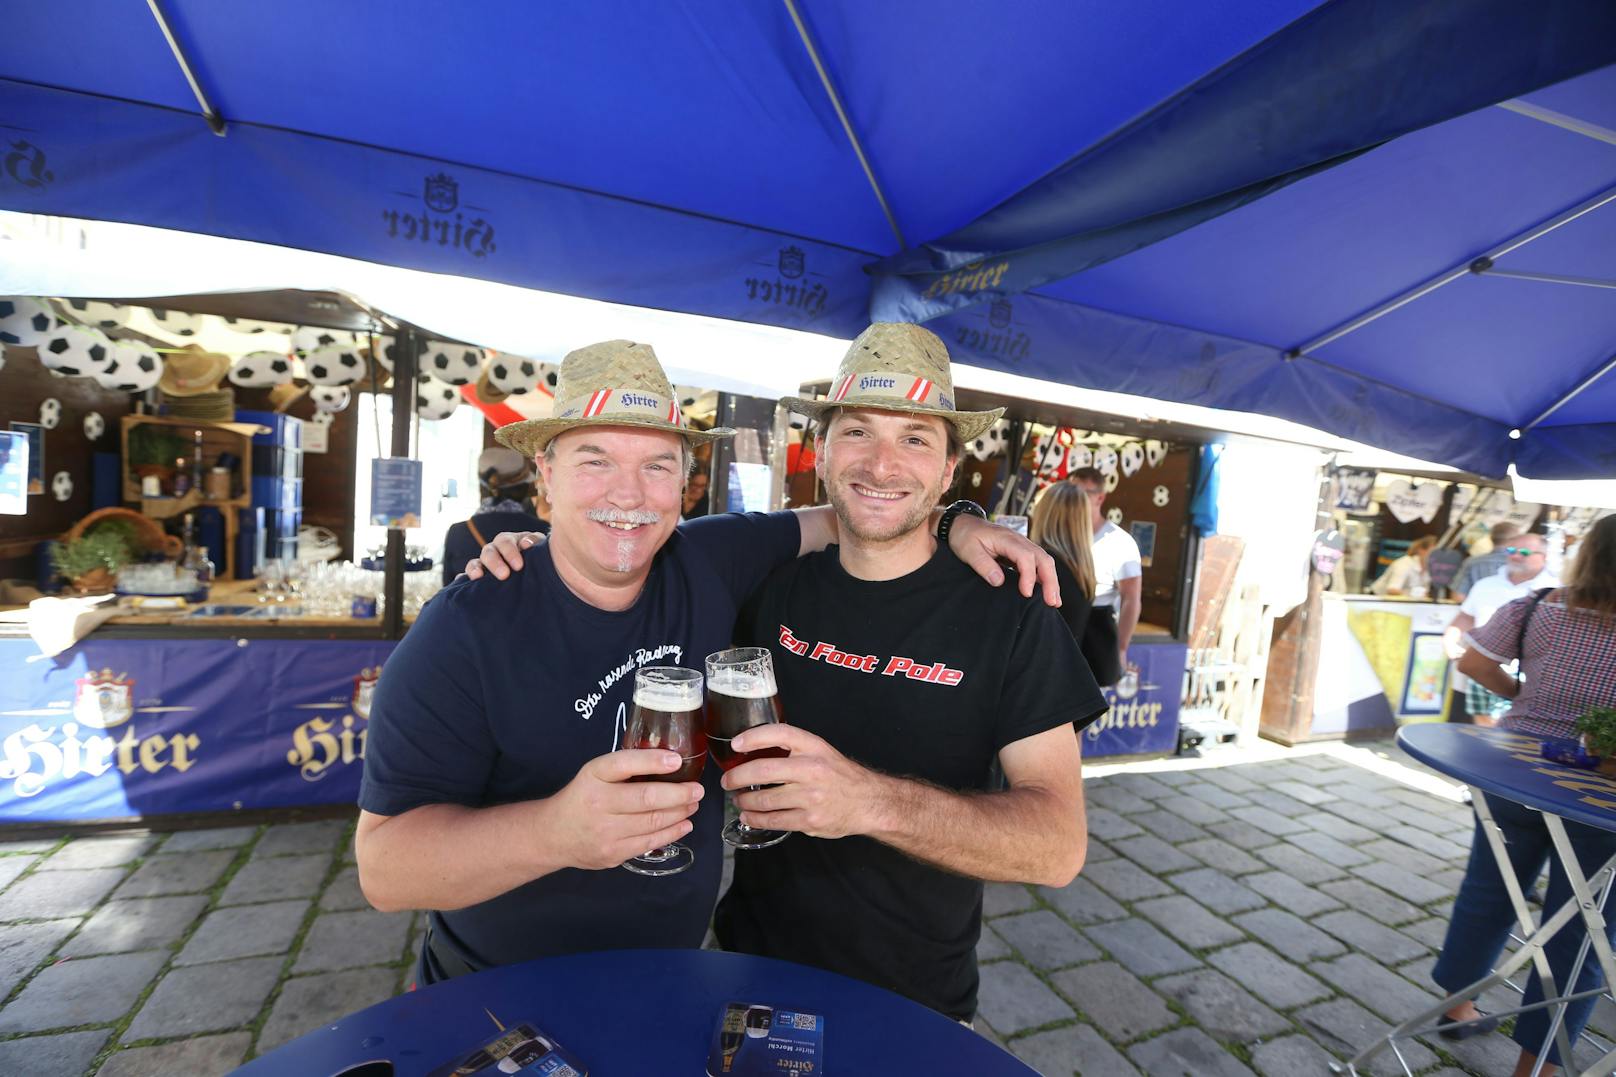 Am Wochenende ist wieder einiges los in Wien. Unter anderem findet das Wiener Bierfest in der City statt.